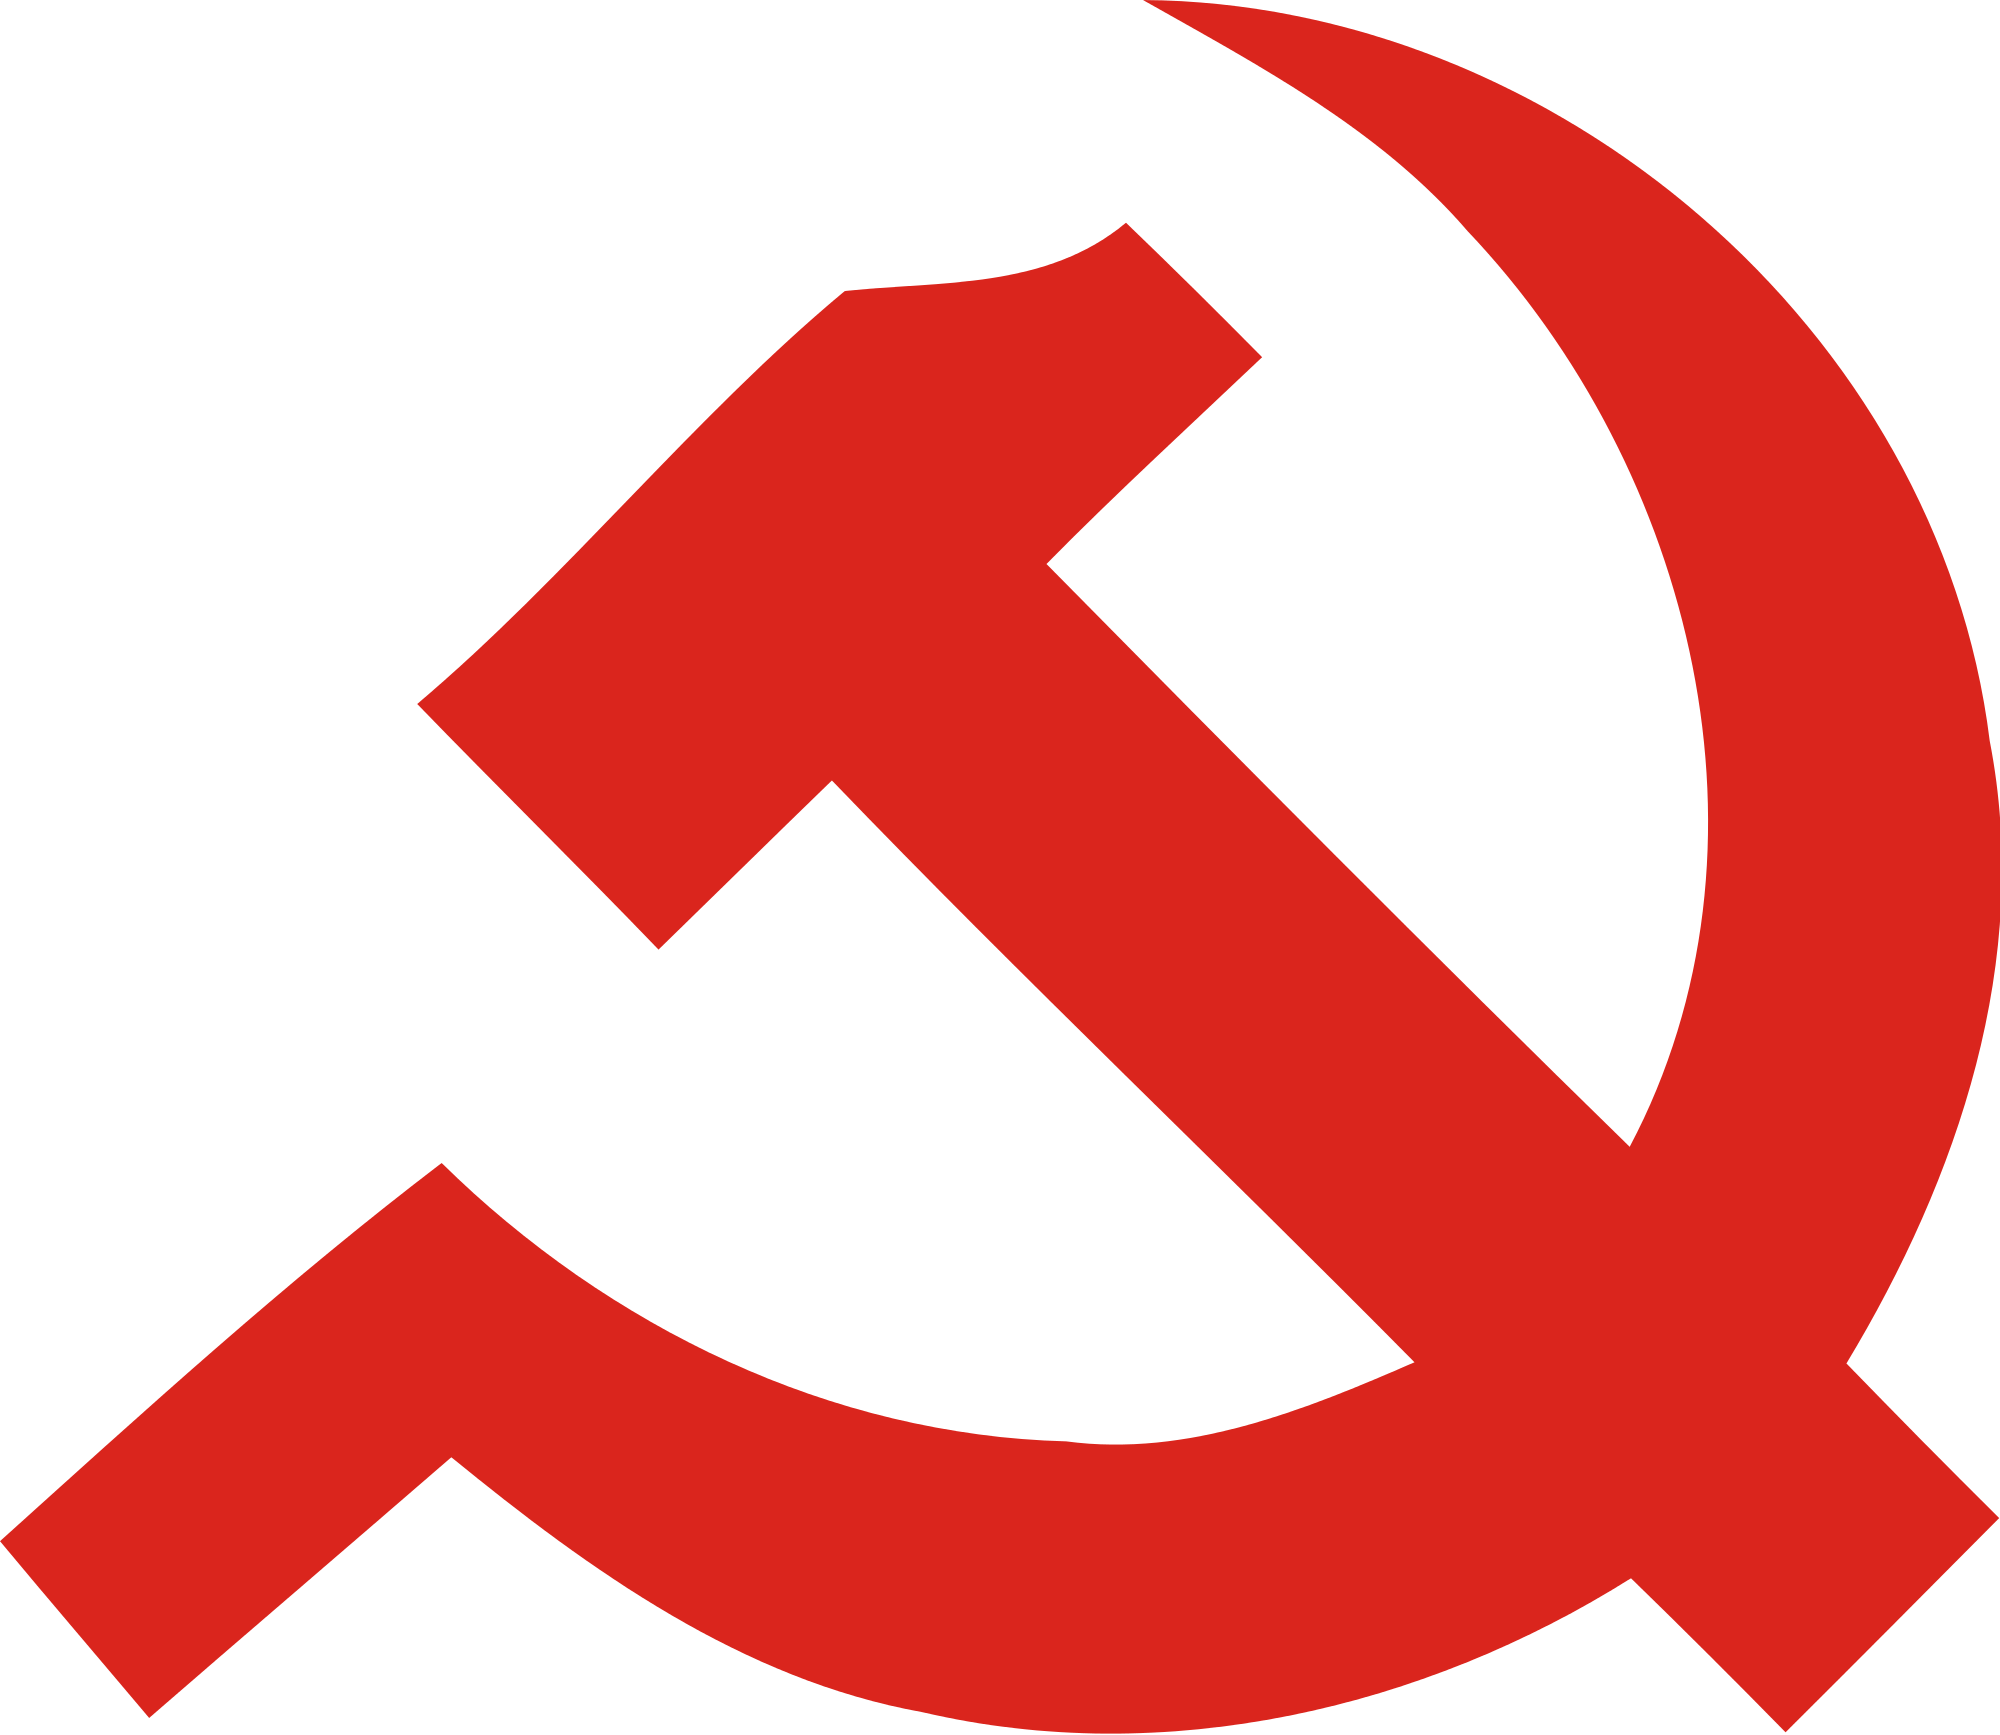 Communist, Flag, Protest, Red